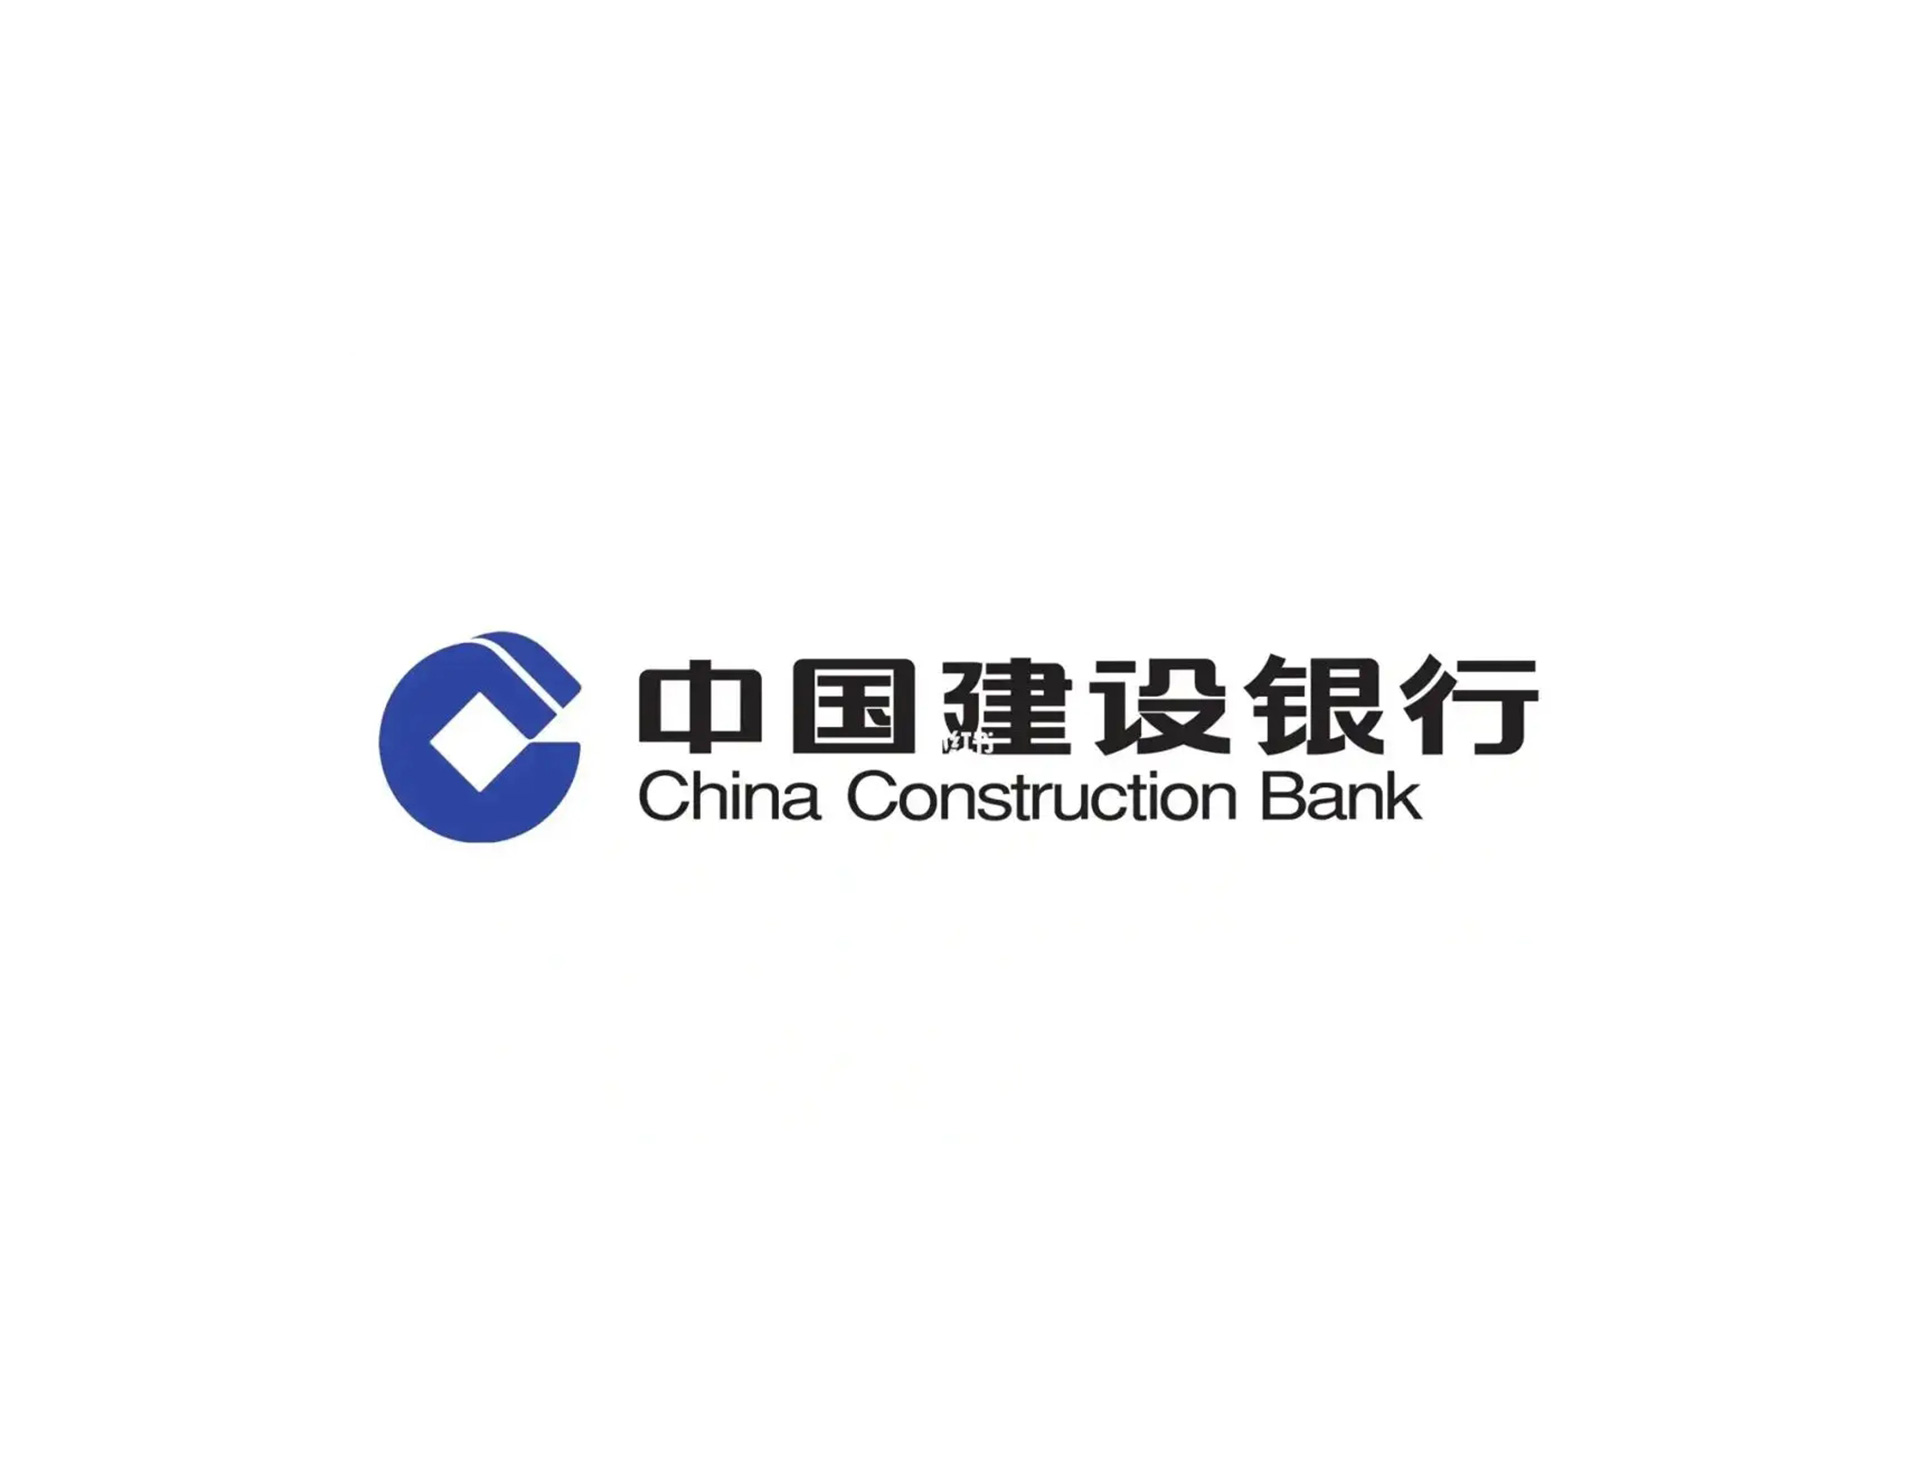 中国建设银行CCB标志设计含义是以古铜钱为基础的内方外圆图形,有着明确的银行属性,着重体现建设银行的”方圆”特性